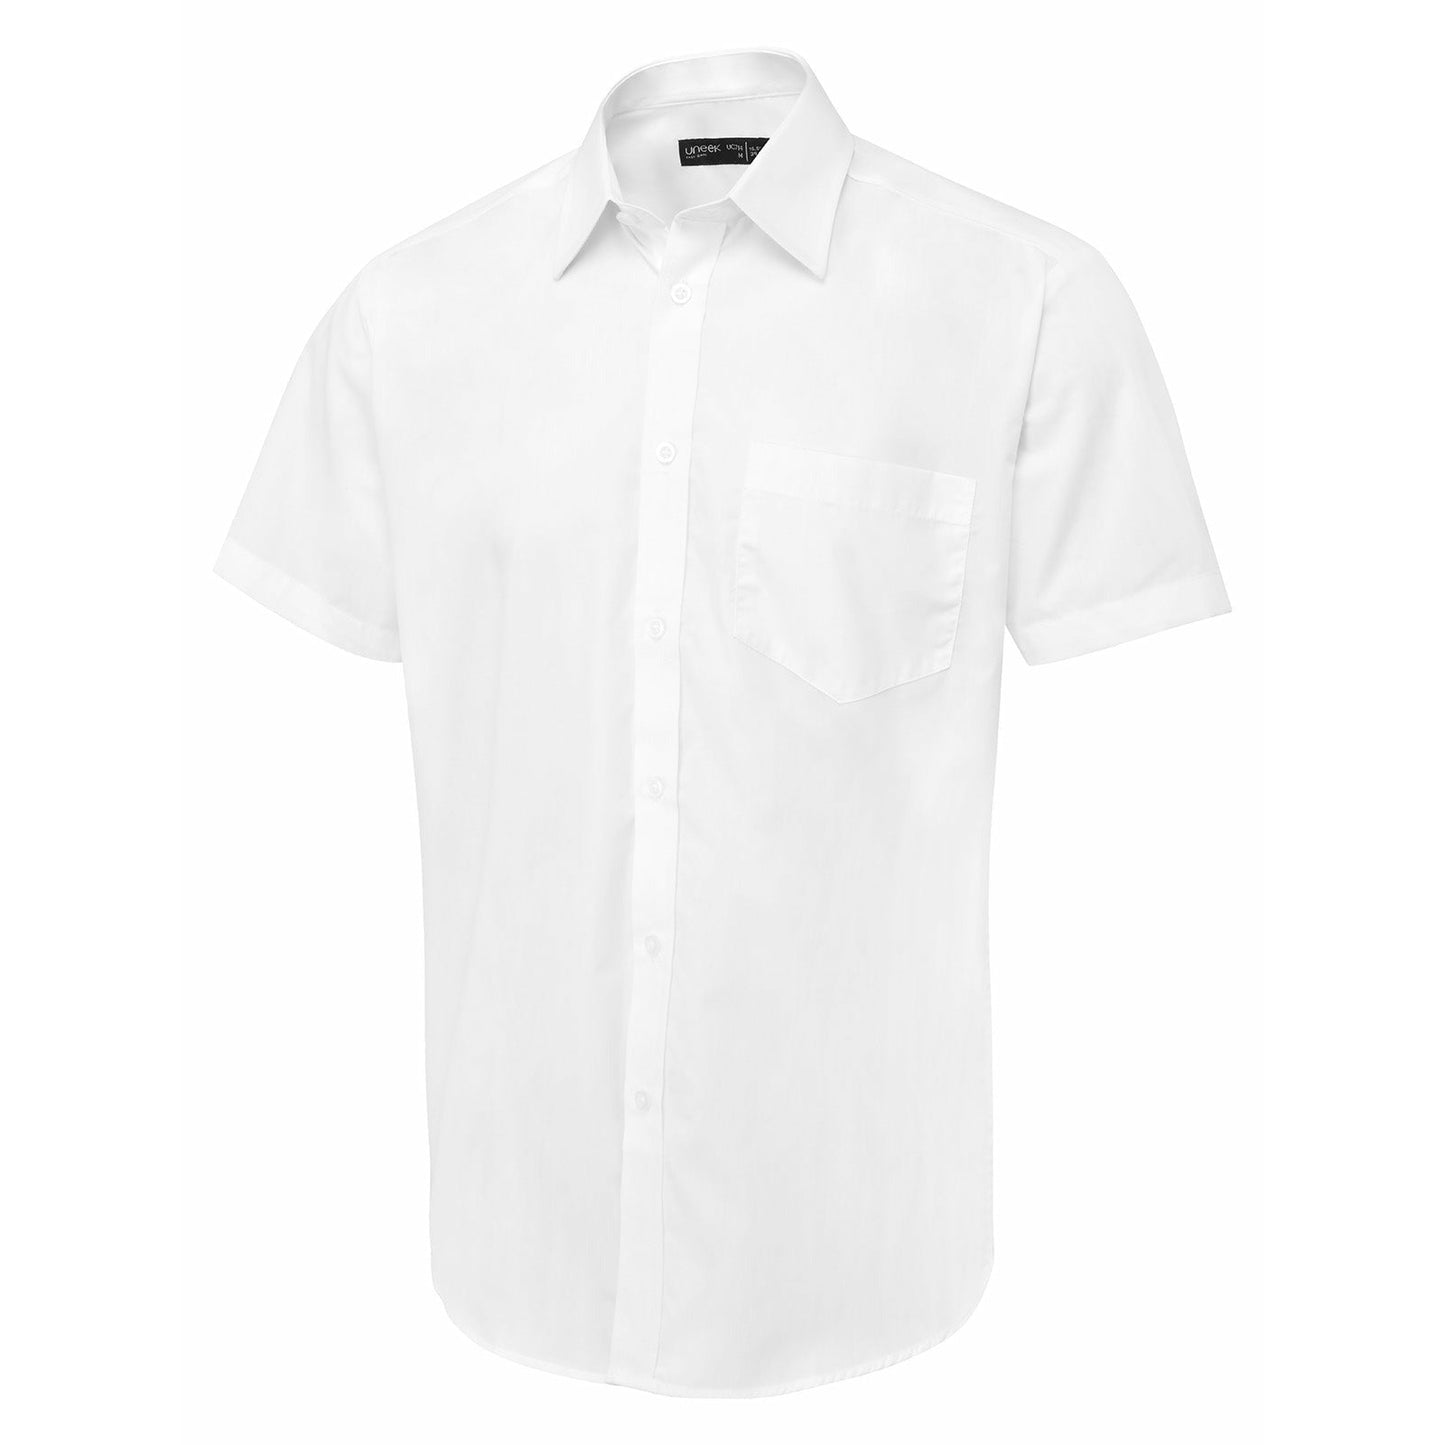 Men's Short Sleeve Poplin Shirt - White